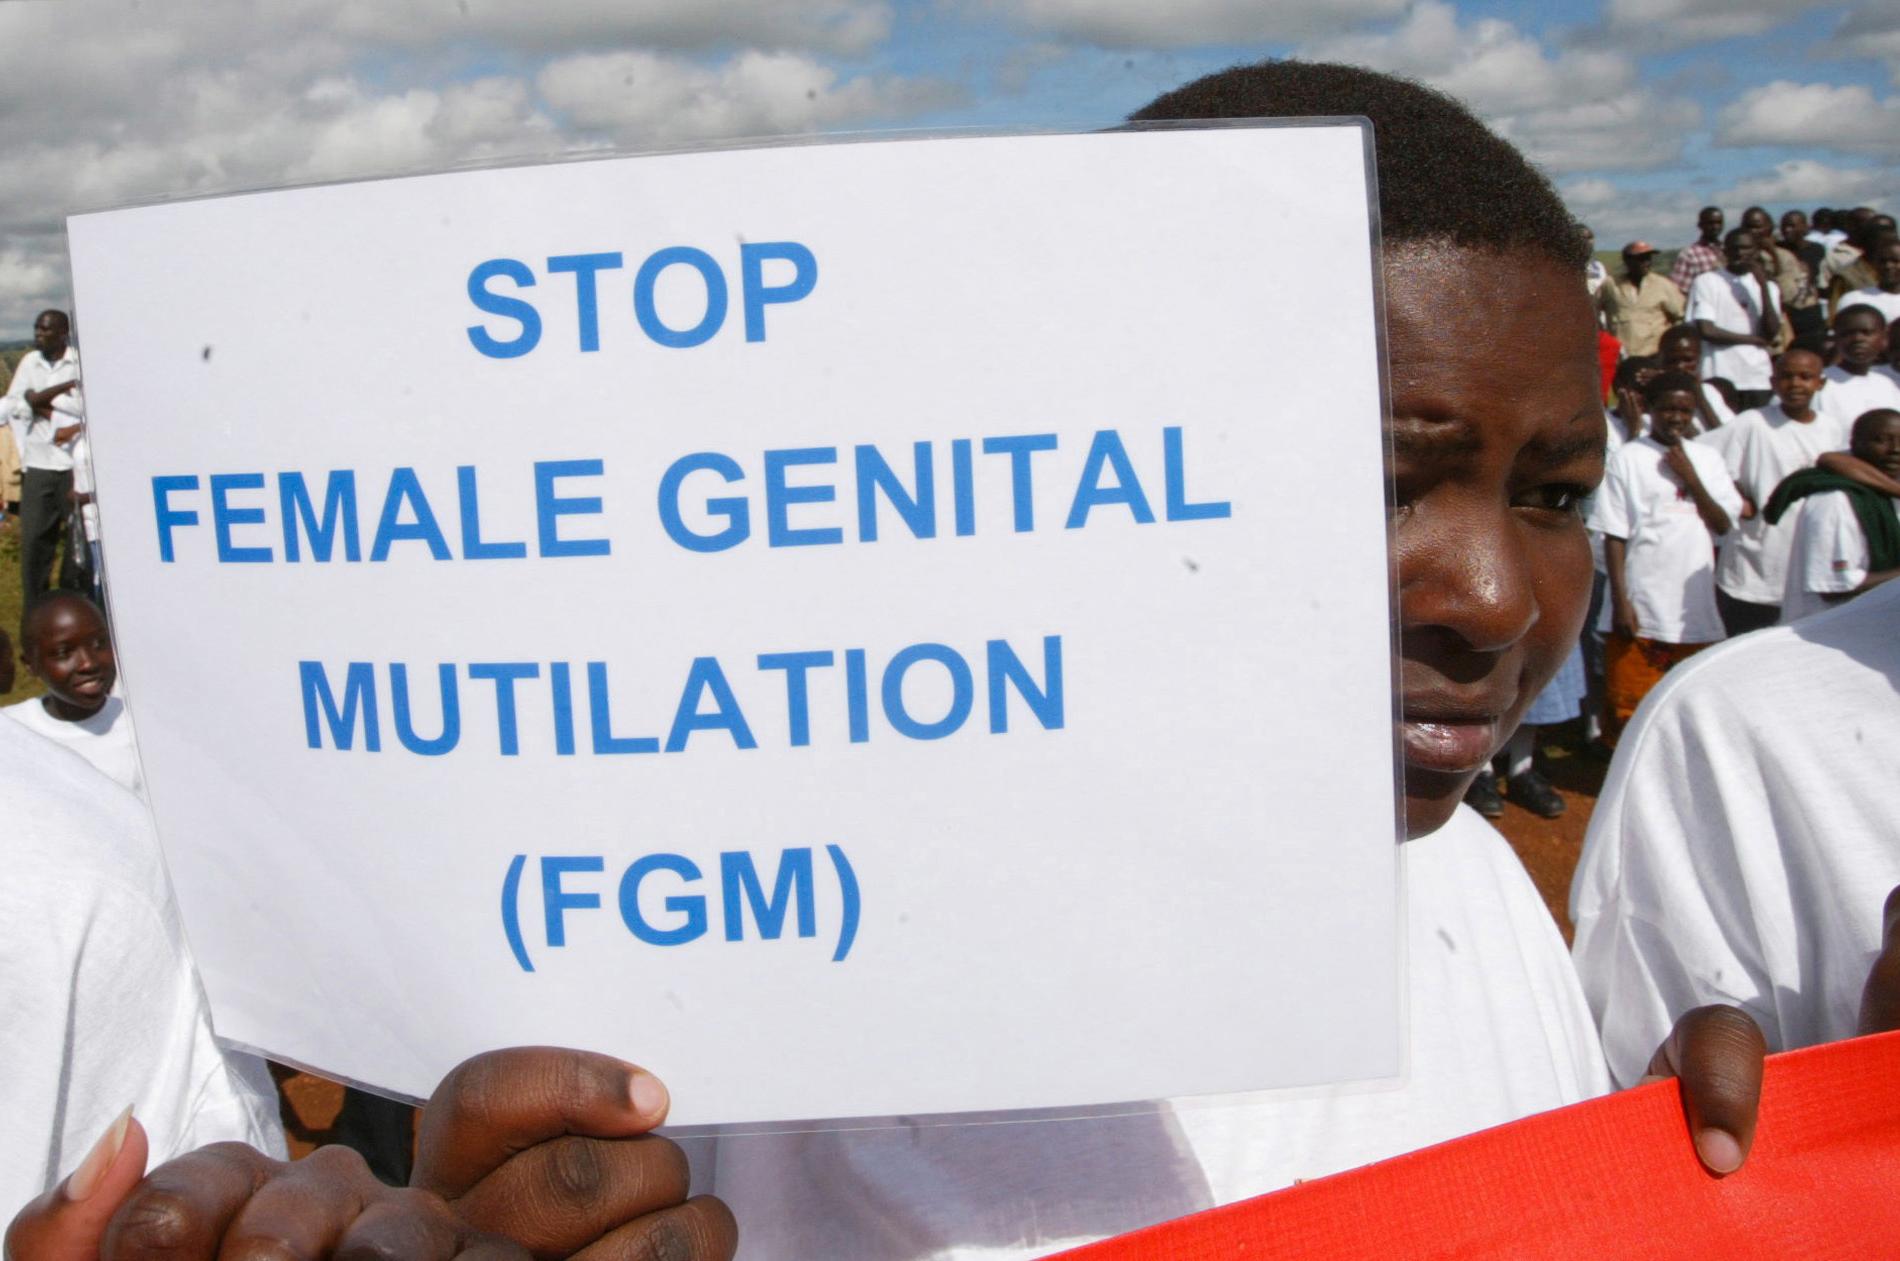 Sida ökar stöd för att stoppa könsstympning